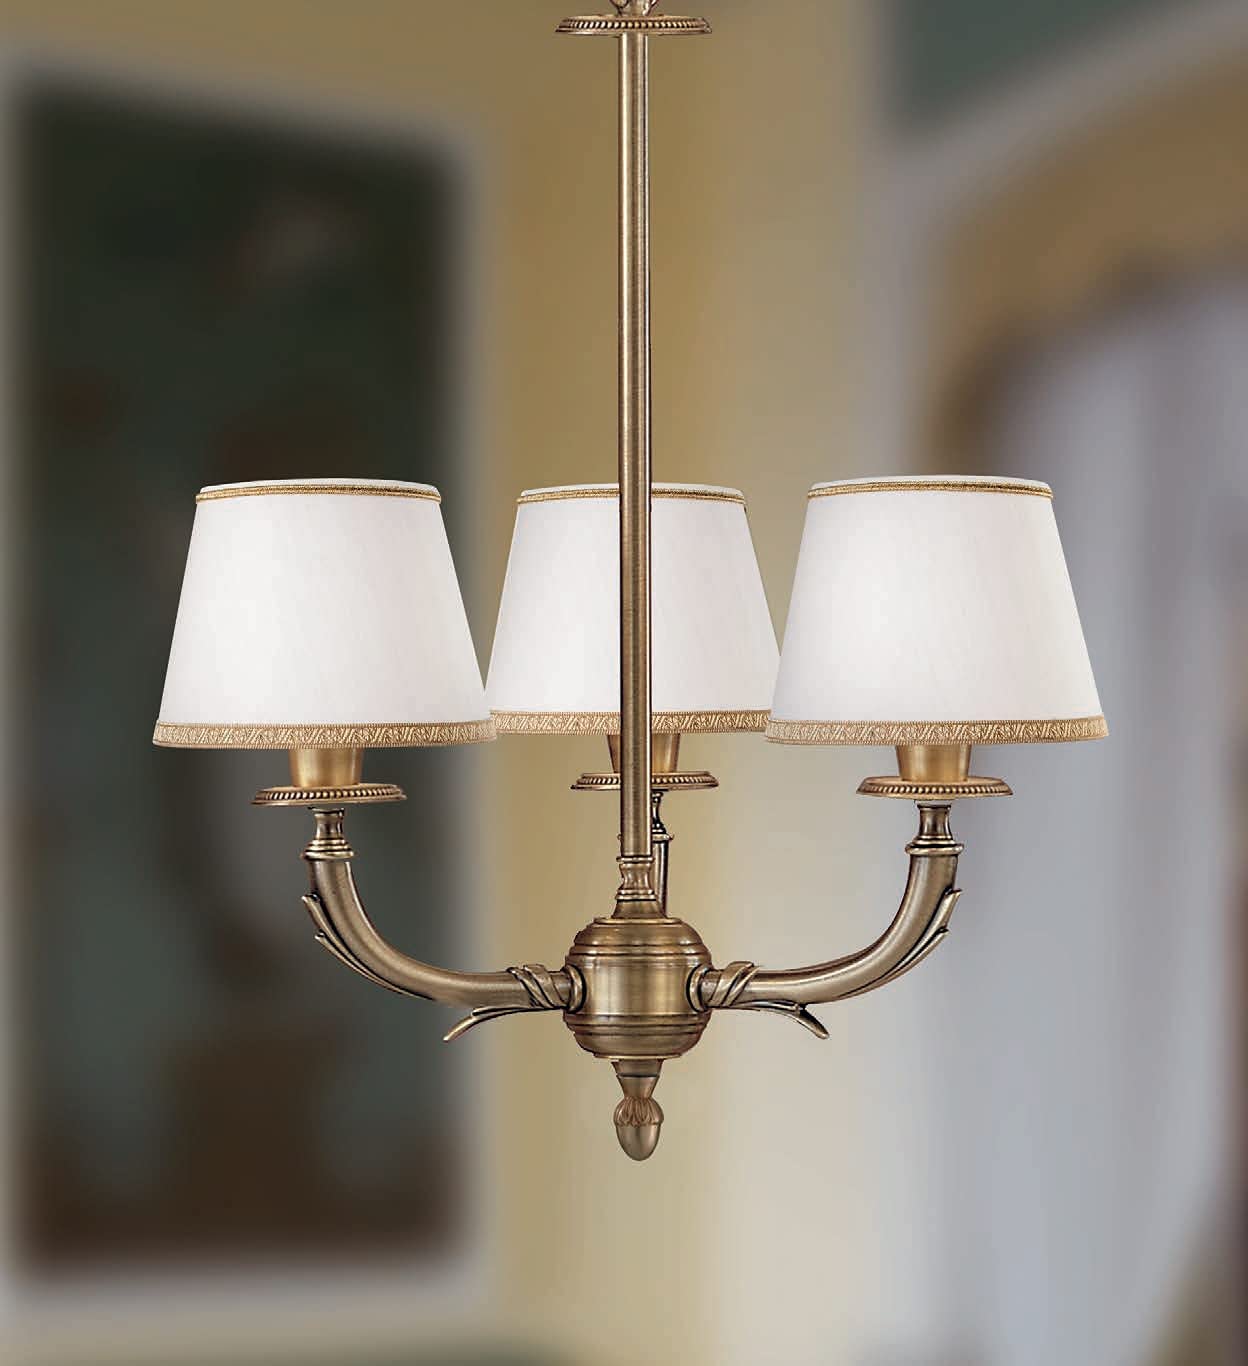 Lampadario classico a 3 luci in ottone bronzo chiaro con paralumi di stoffa avorio chiaro PR 6646/3